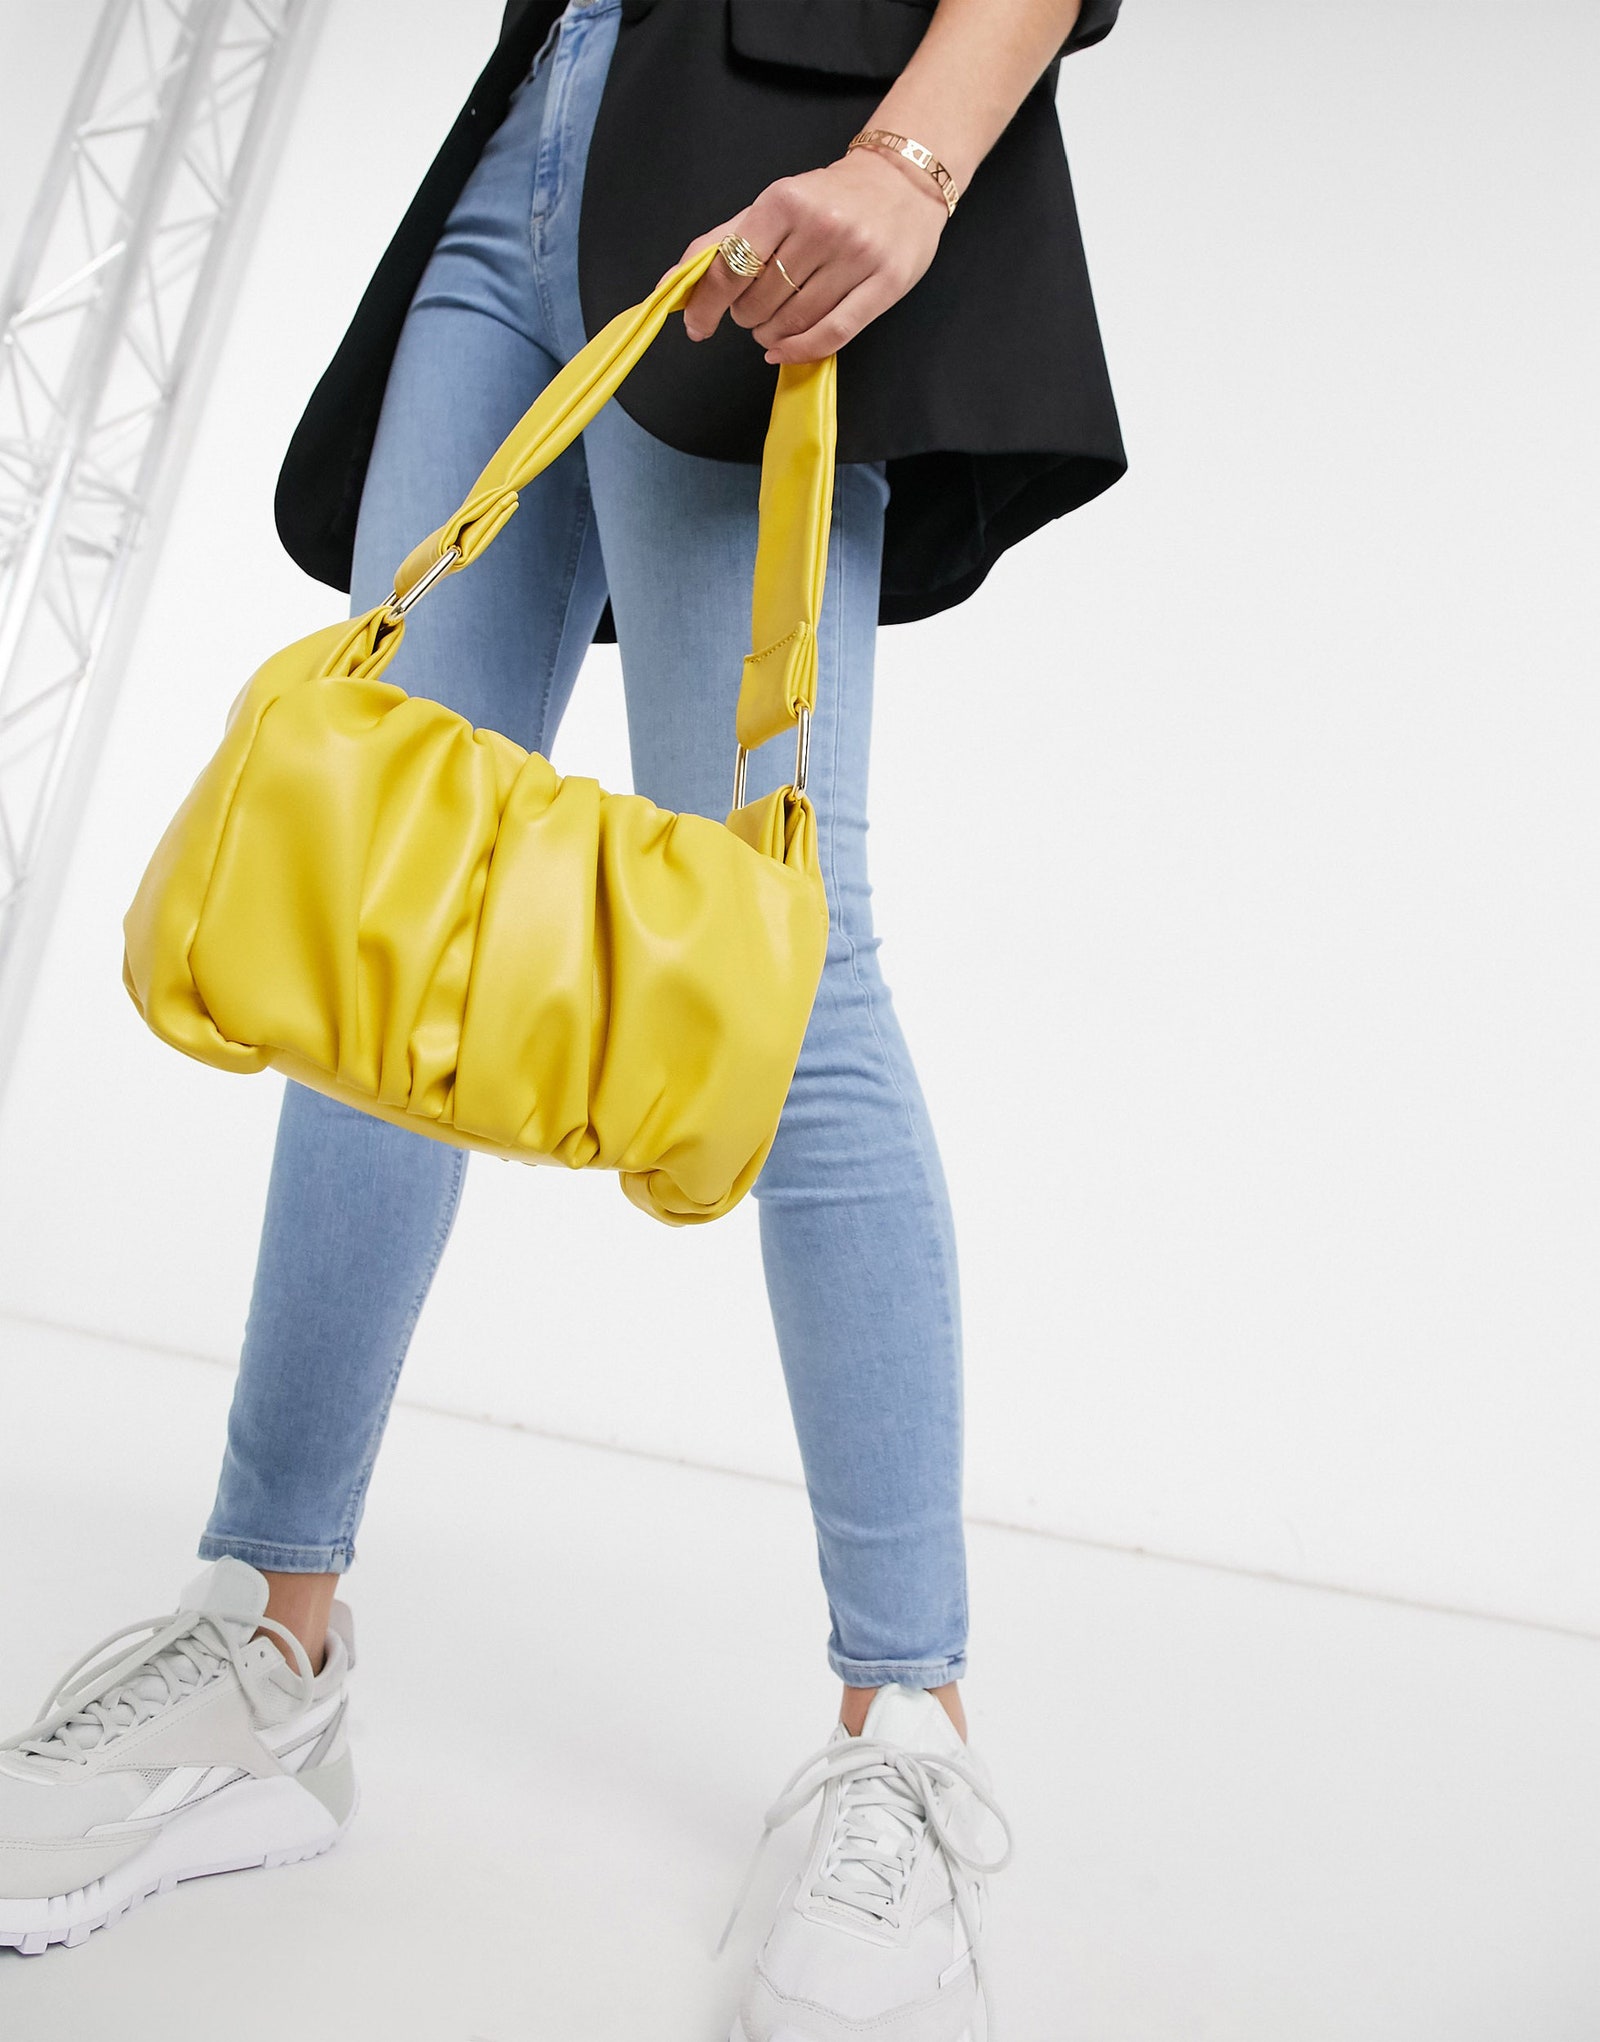 Выбираем модные сумки на весну 2021 года — как у влиятельных блогеров